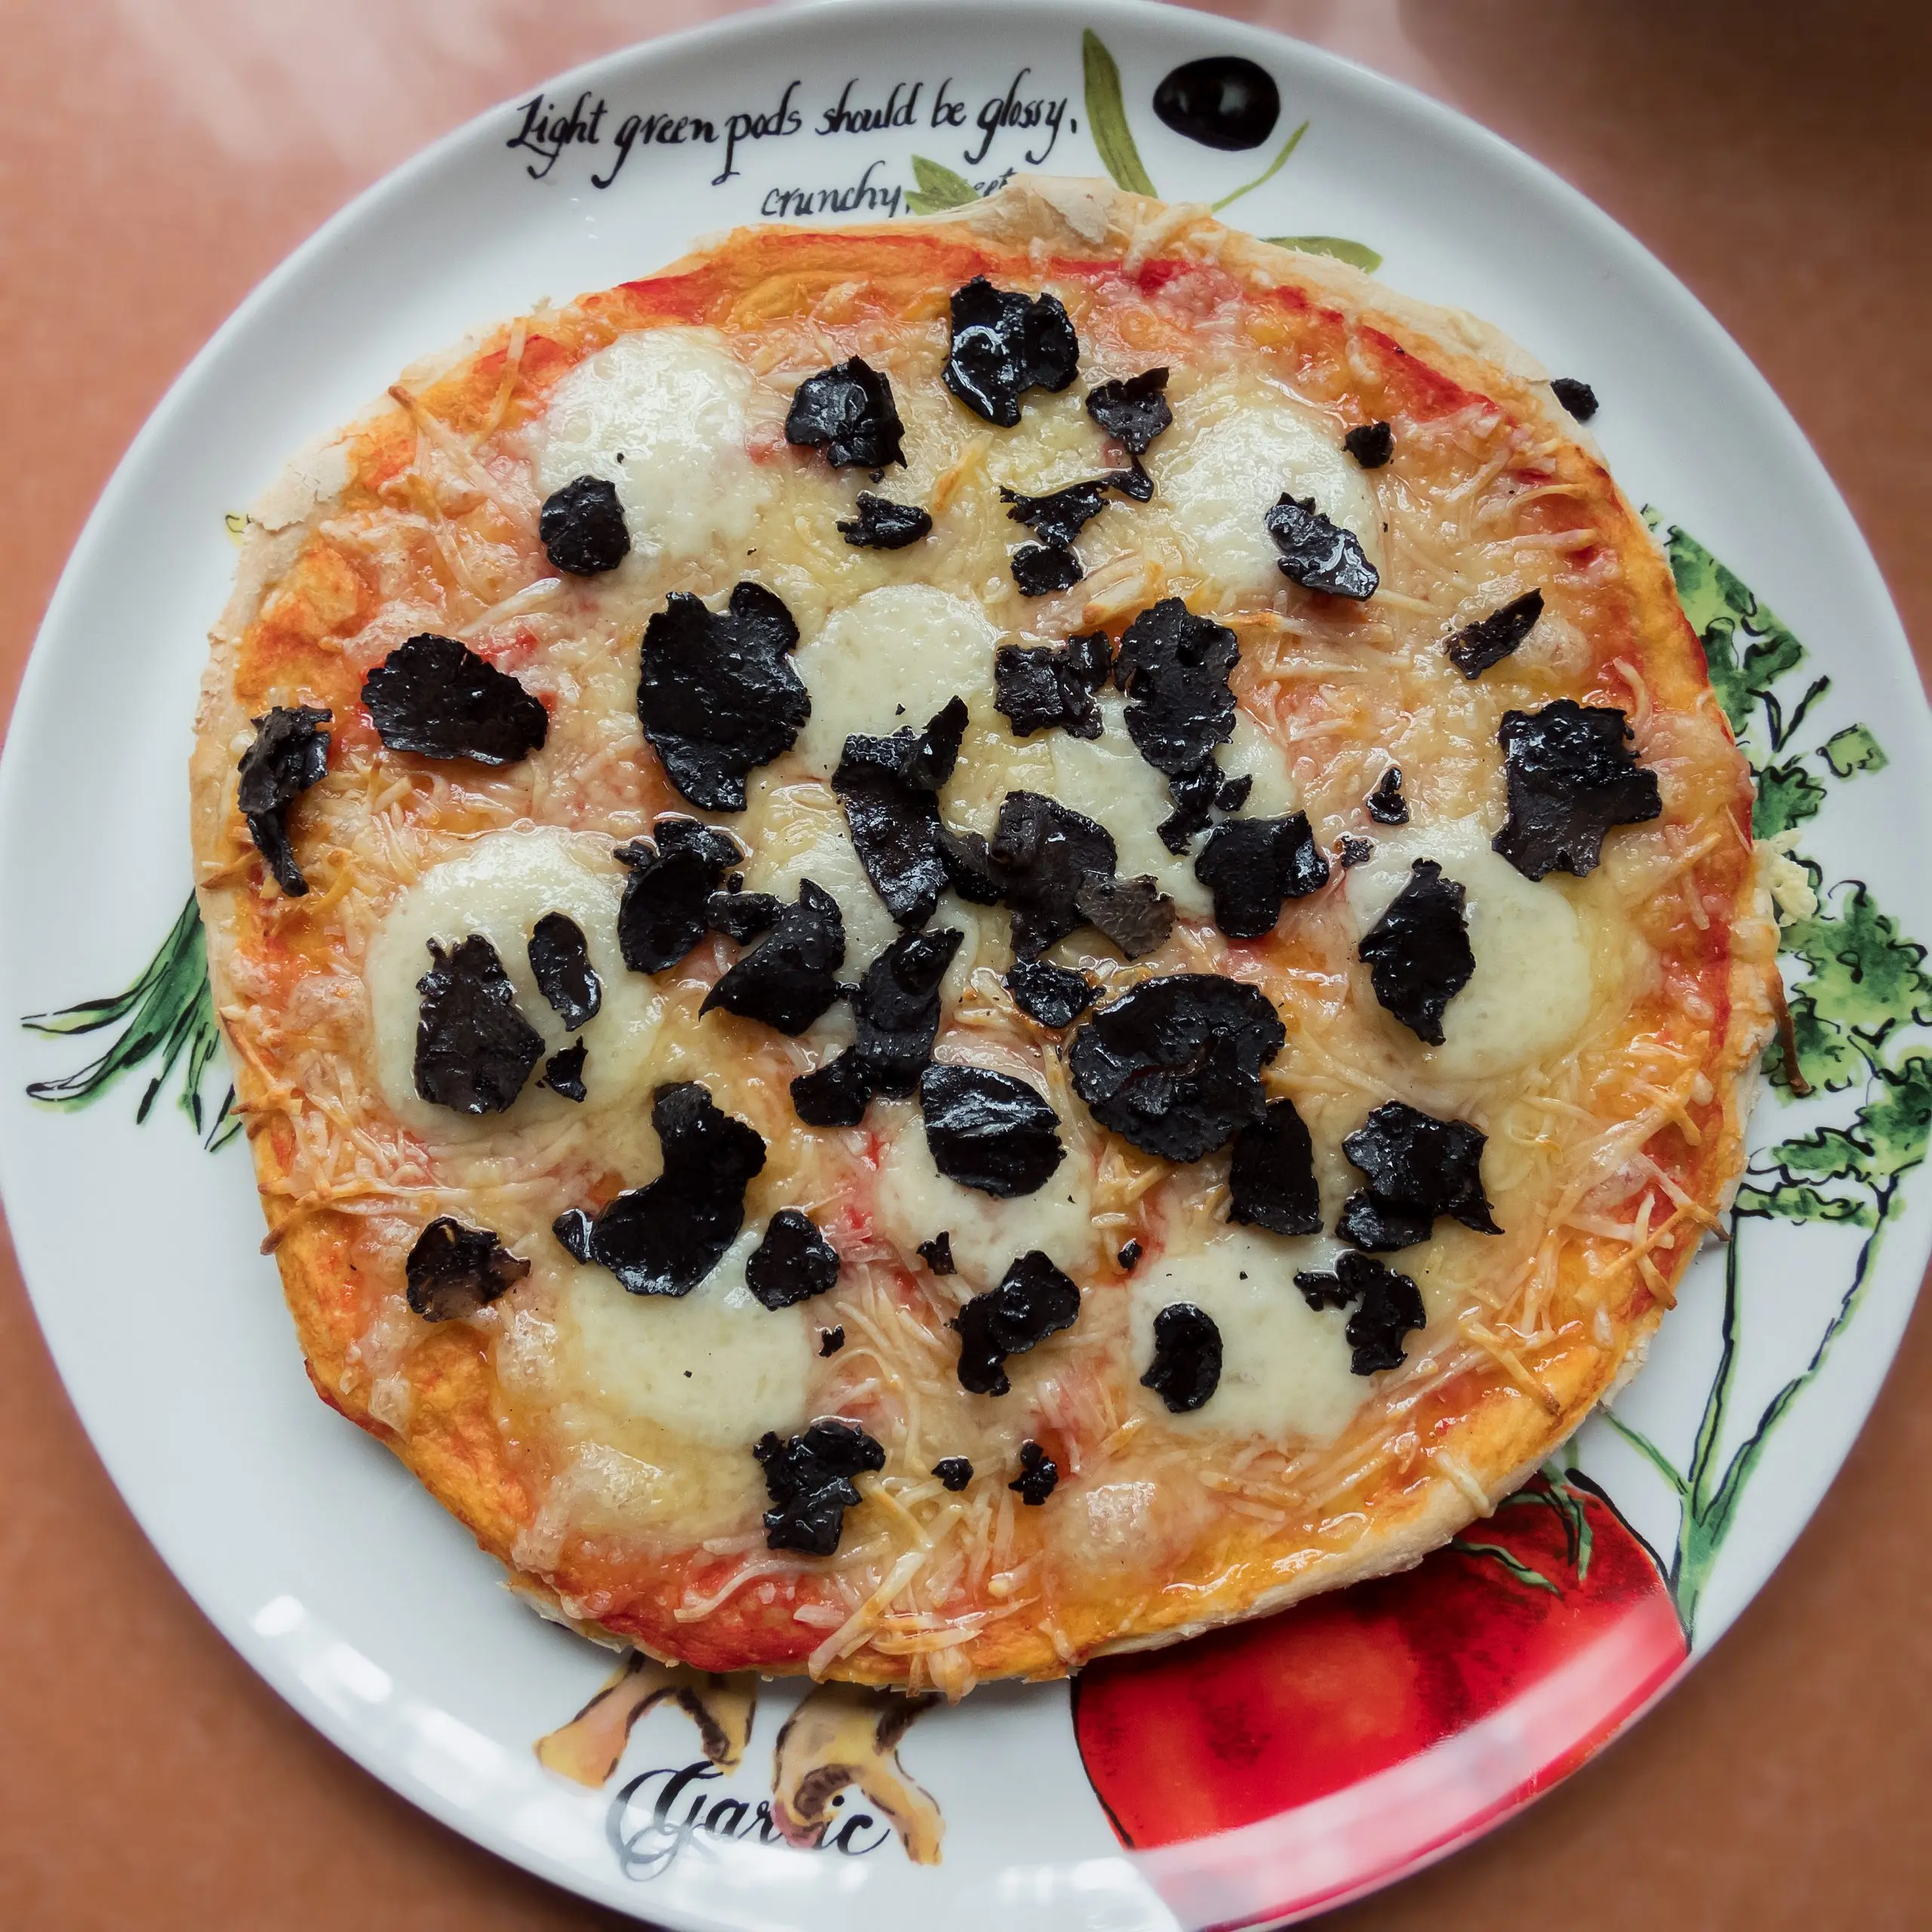 pizza con trufa negra - Cuál es el sabor de la trufa negra